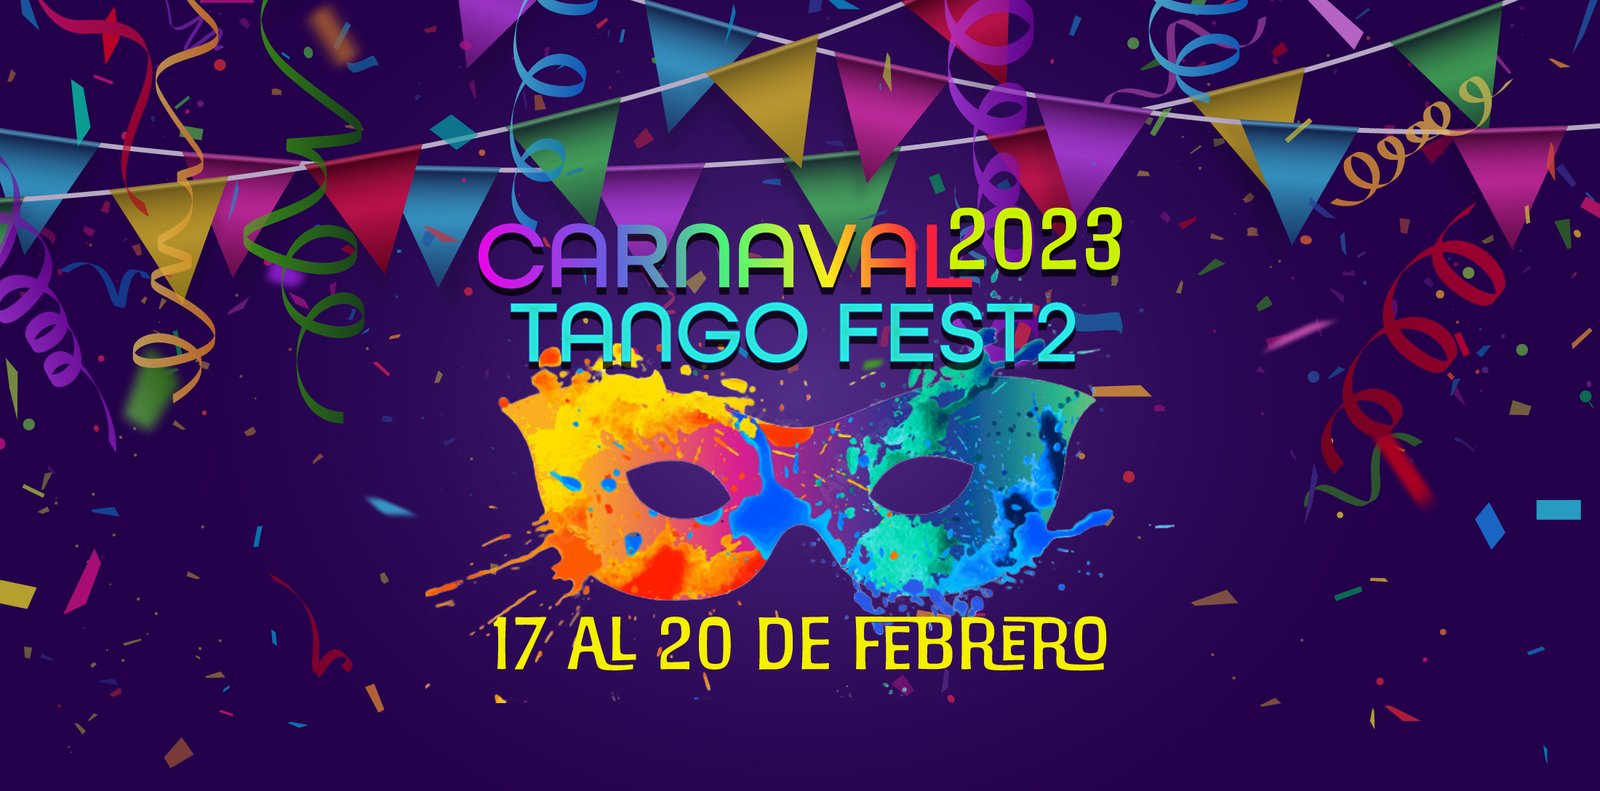 Carnaval Tango Fest 2da Edición